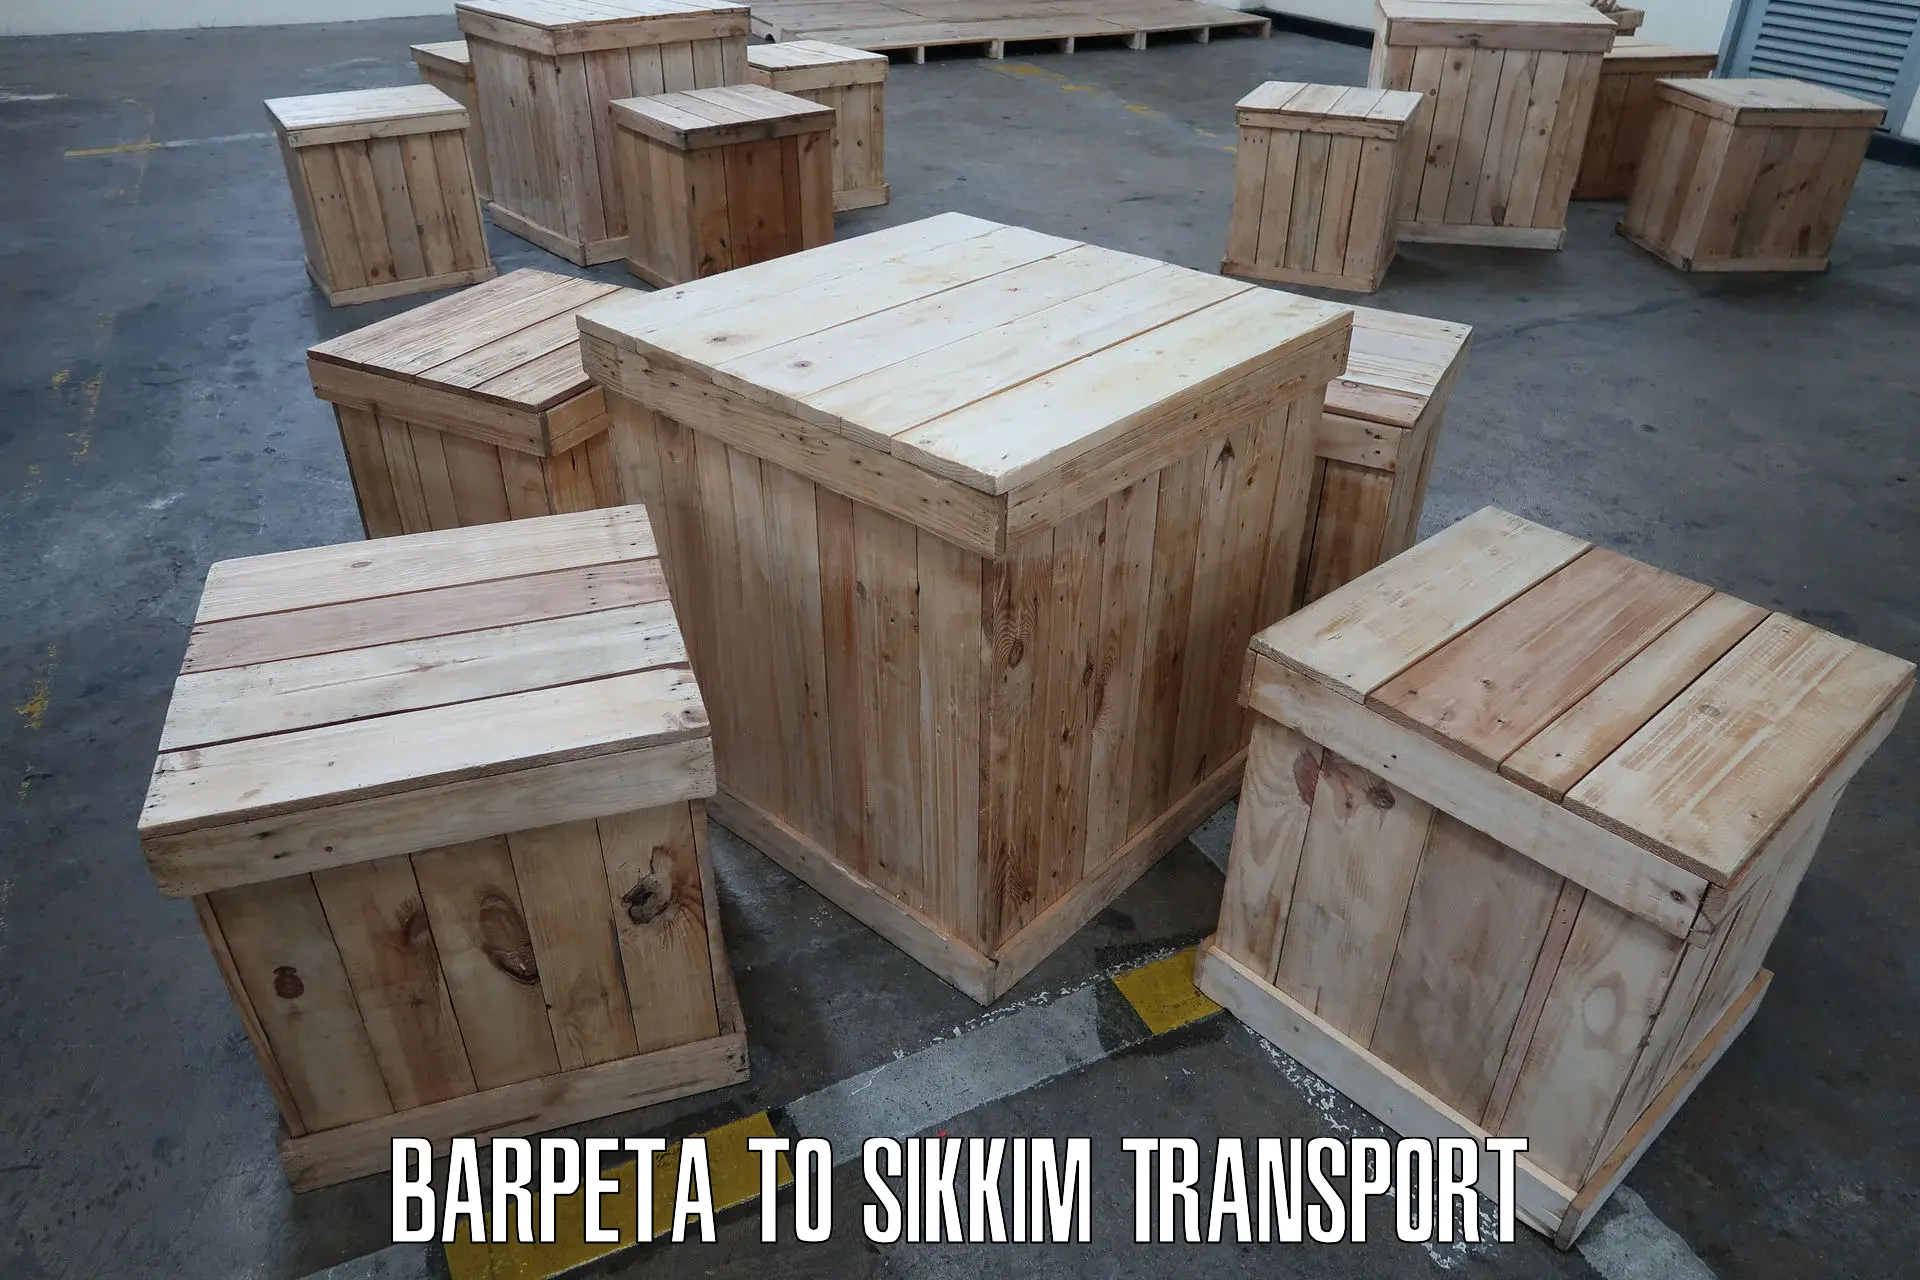 Transport in sharing Barpeta to Geyzing